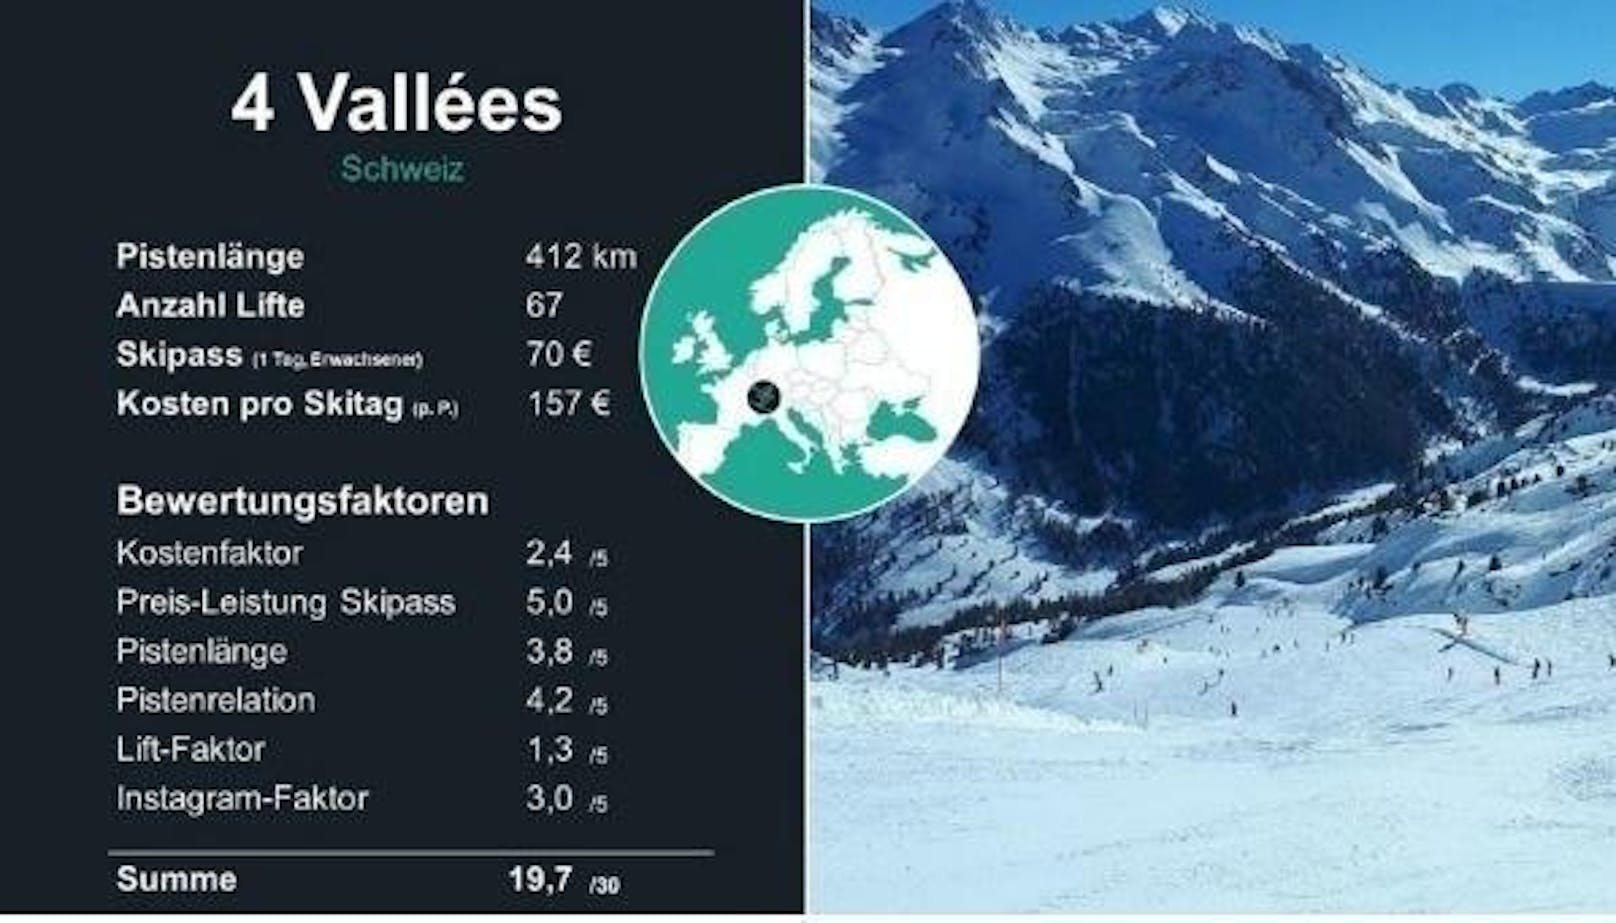 <b>3. Platz: 4 Vallées</b>

Das Gebiet in der Schweiz wandert gleich 16 Plätze nach oben. Die Preise für ein Doppelzimmer sank von 147 auf 80 pro Nacht. Dort kann man auch insgesamt sparsam urlauben. Es gibt eine Pistenverteilung, die für Familien und Gruppen mit unterschiedlichem Niveau geeignet ist.